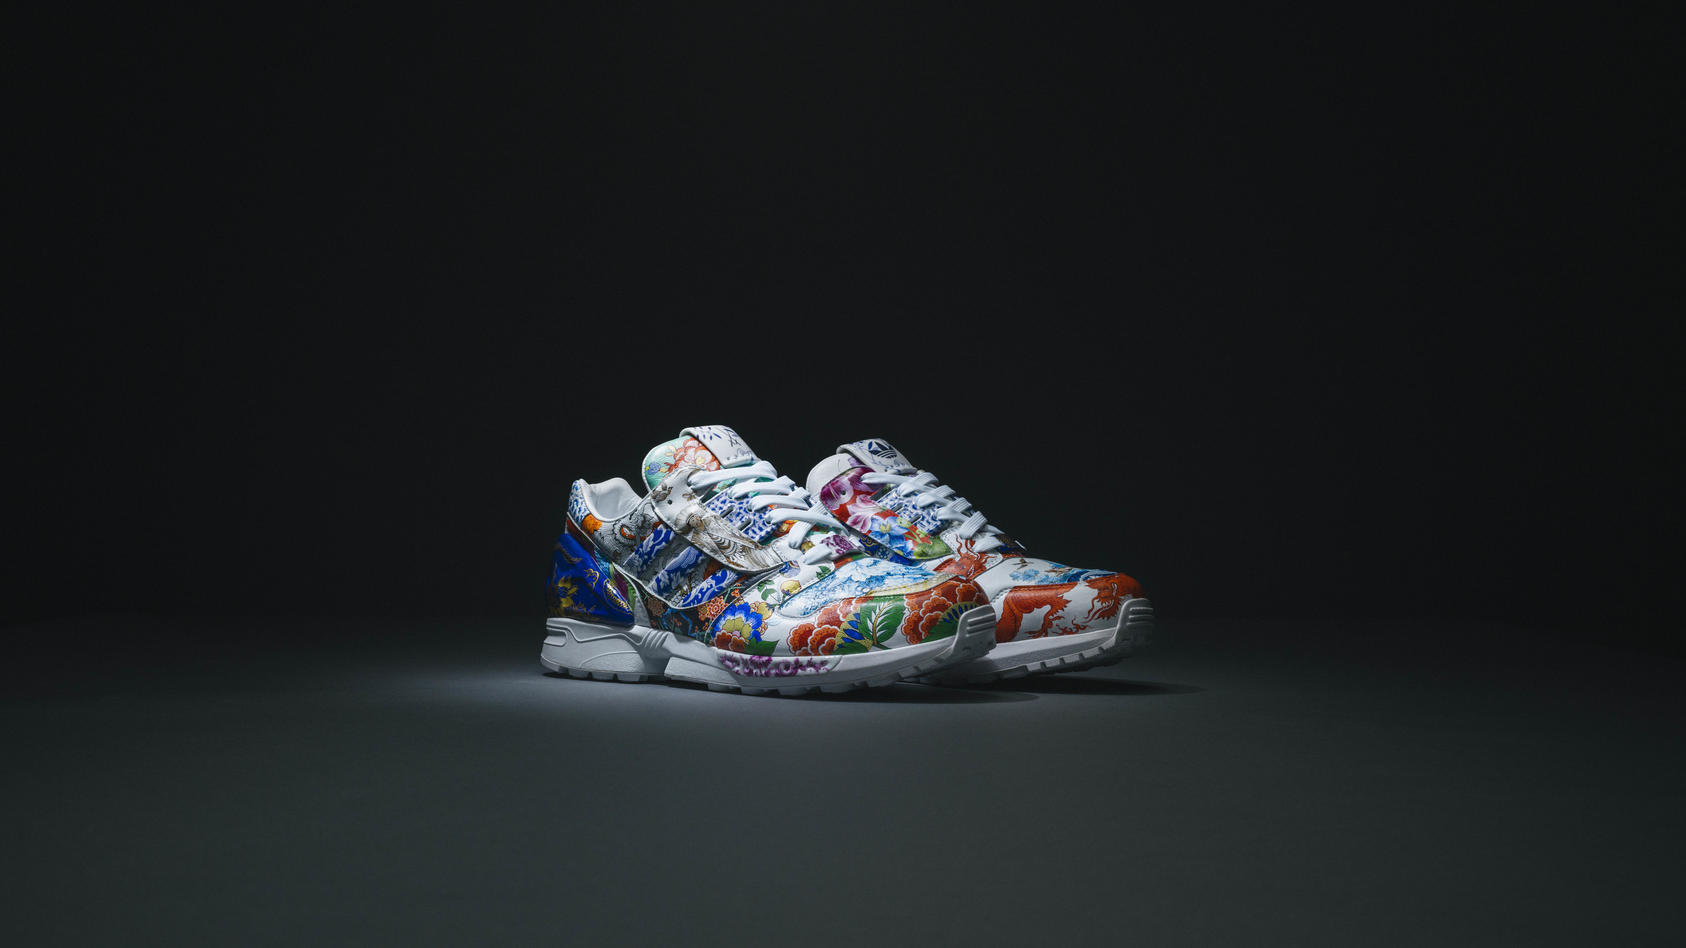 Dieser Sneaker mit Porzellan-Details wurde sechs Monate lang gefertigt und handbemalt. Macht ihn das zum wertvollsten Schuh der Welt?